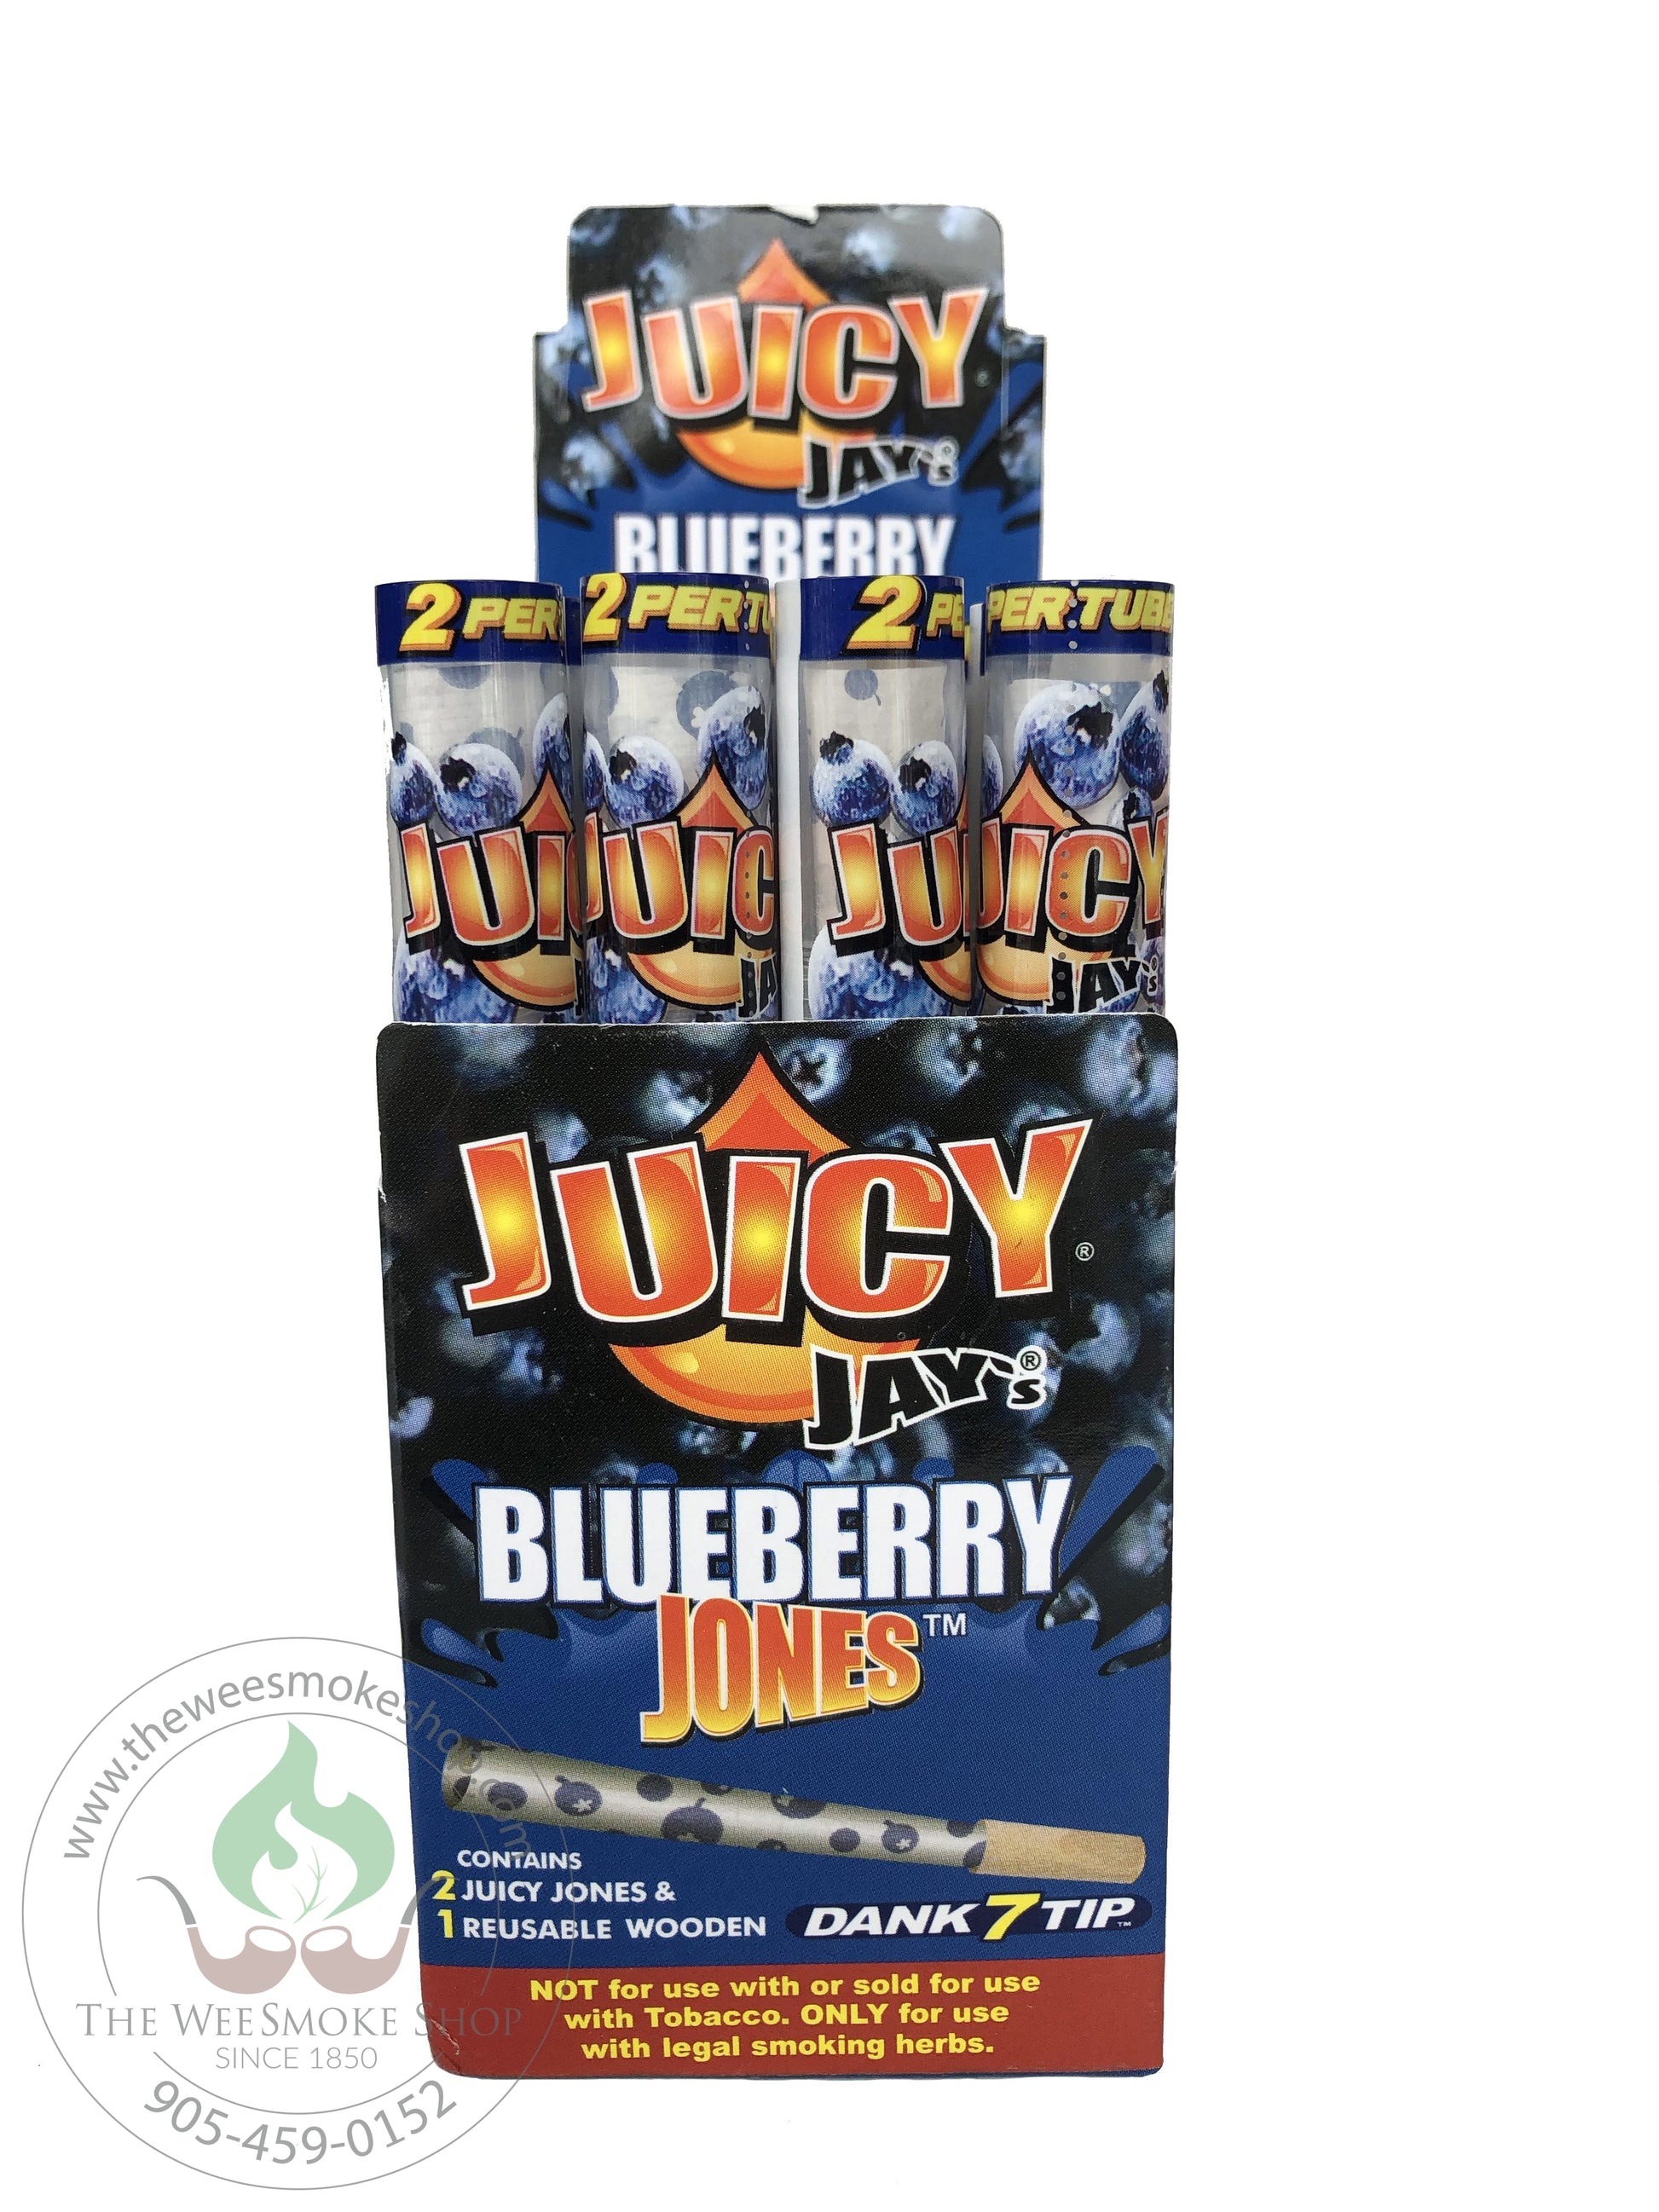 Blueberry jones juicy jay cones 2 cones and 1 reusable wooden tip.